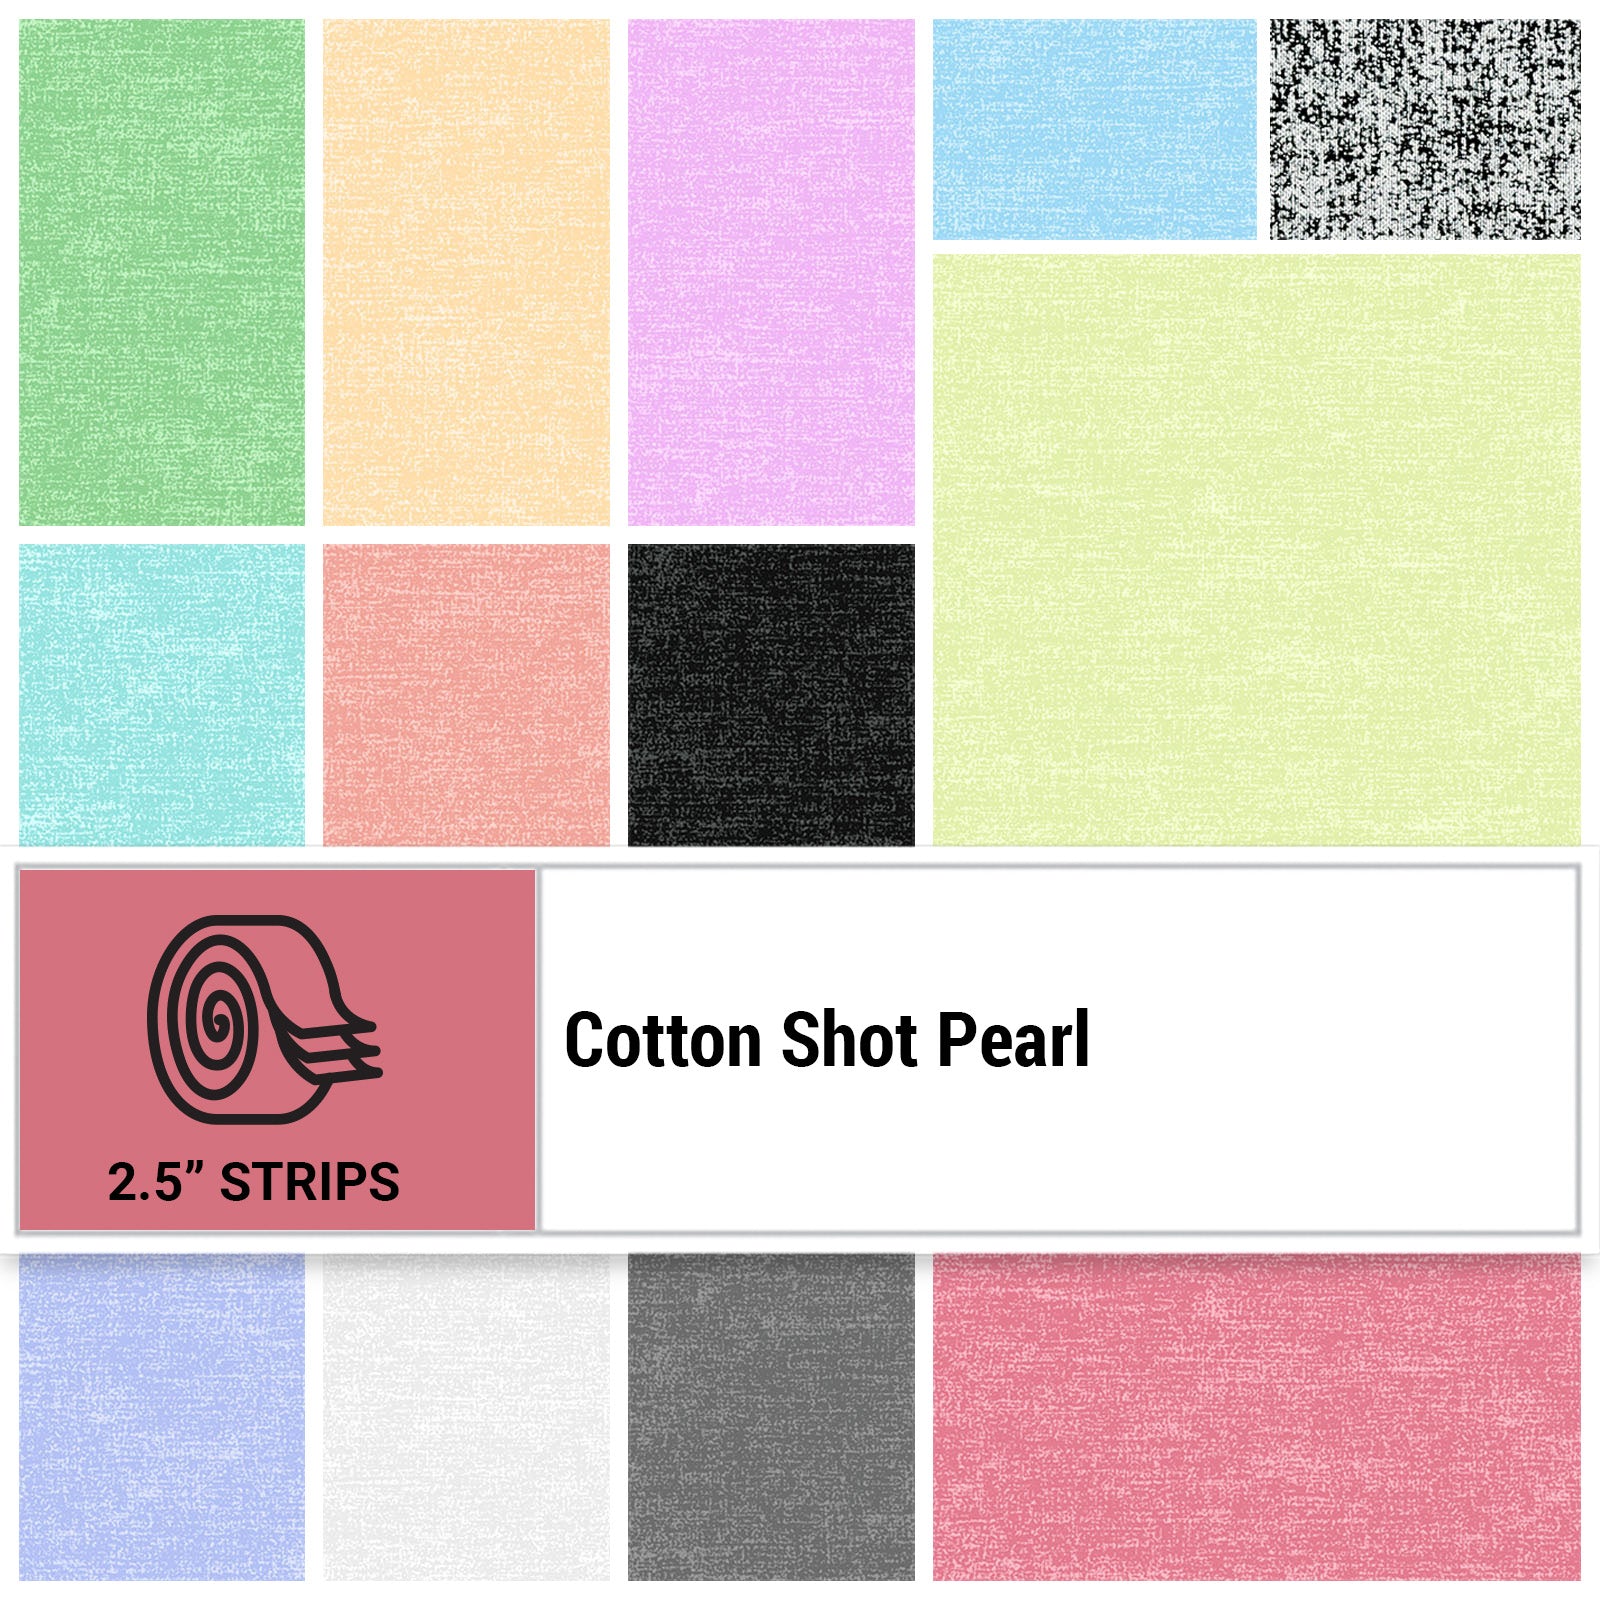 Cotton Shot Pearl strips